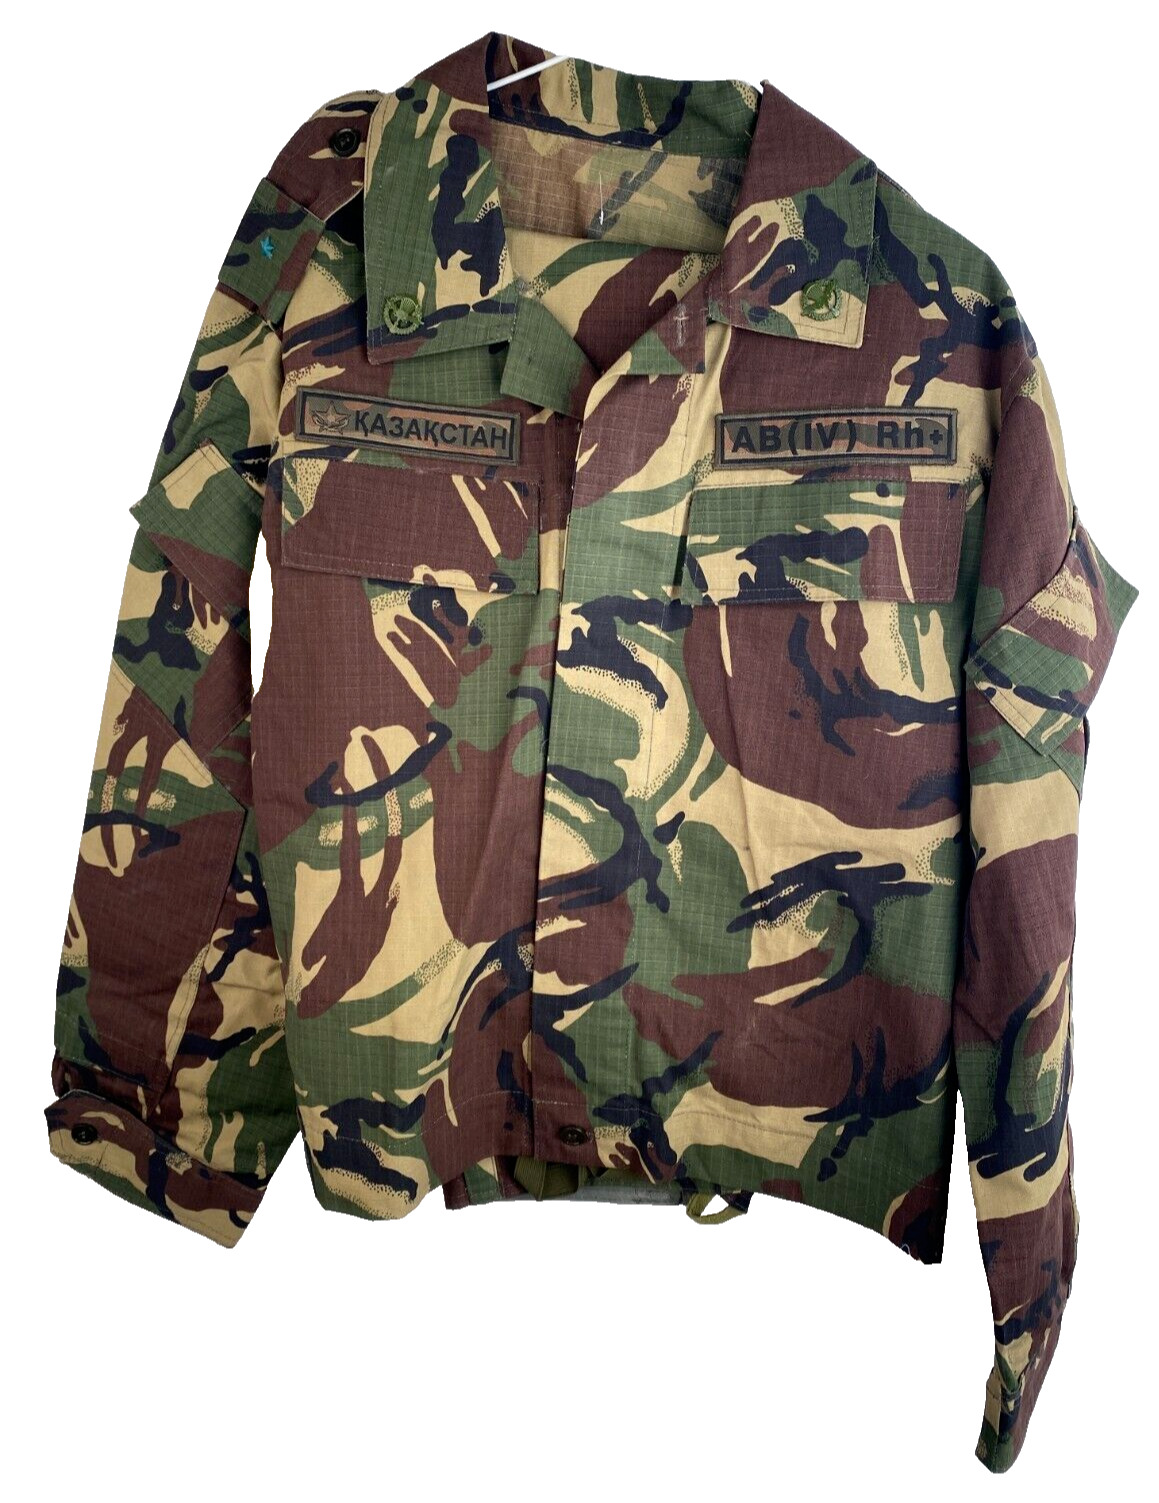 Vintage Kazakhstan Army Airborne Special Forces Military Uniform Jacket Pants